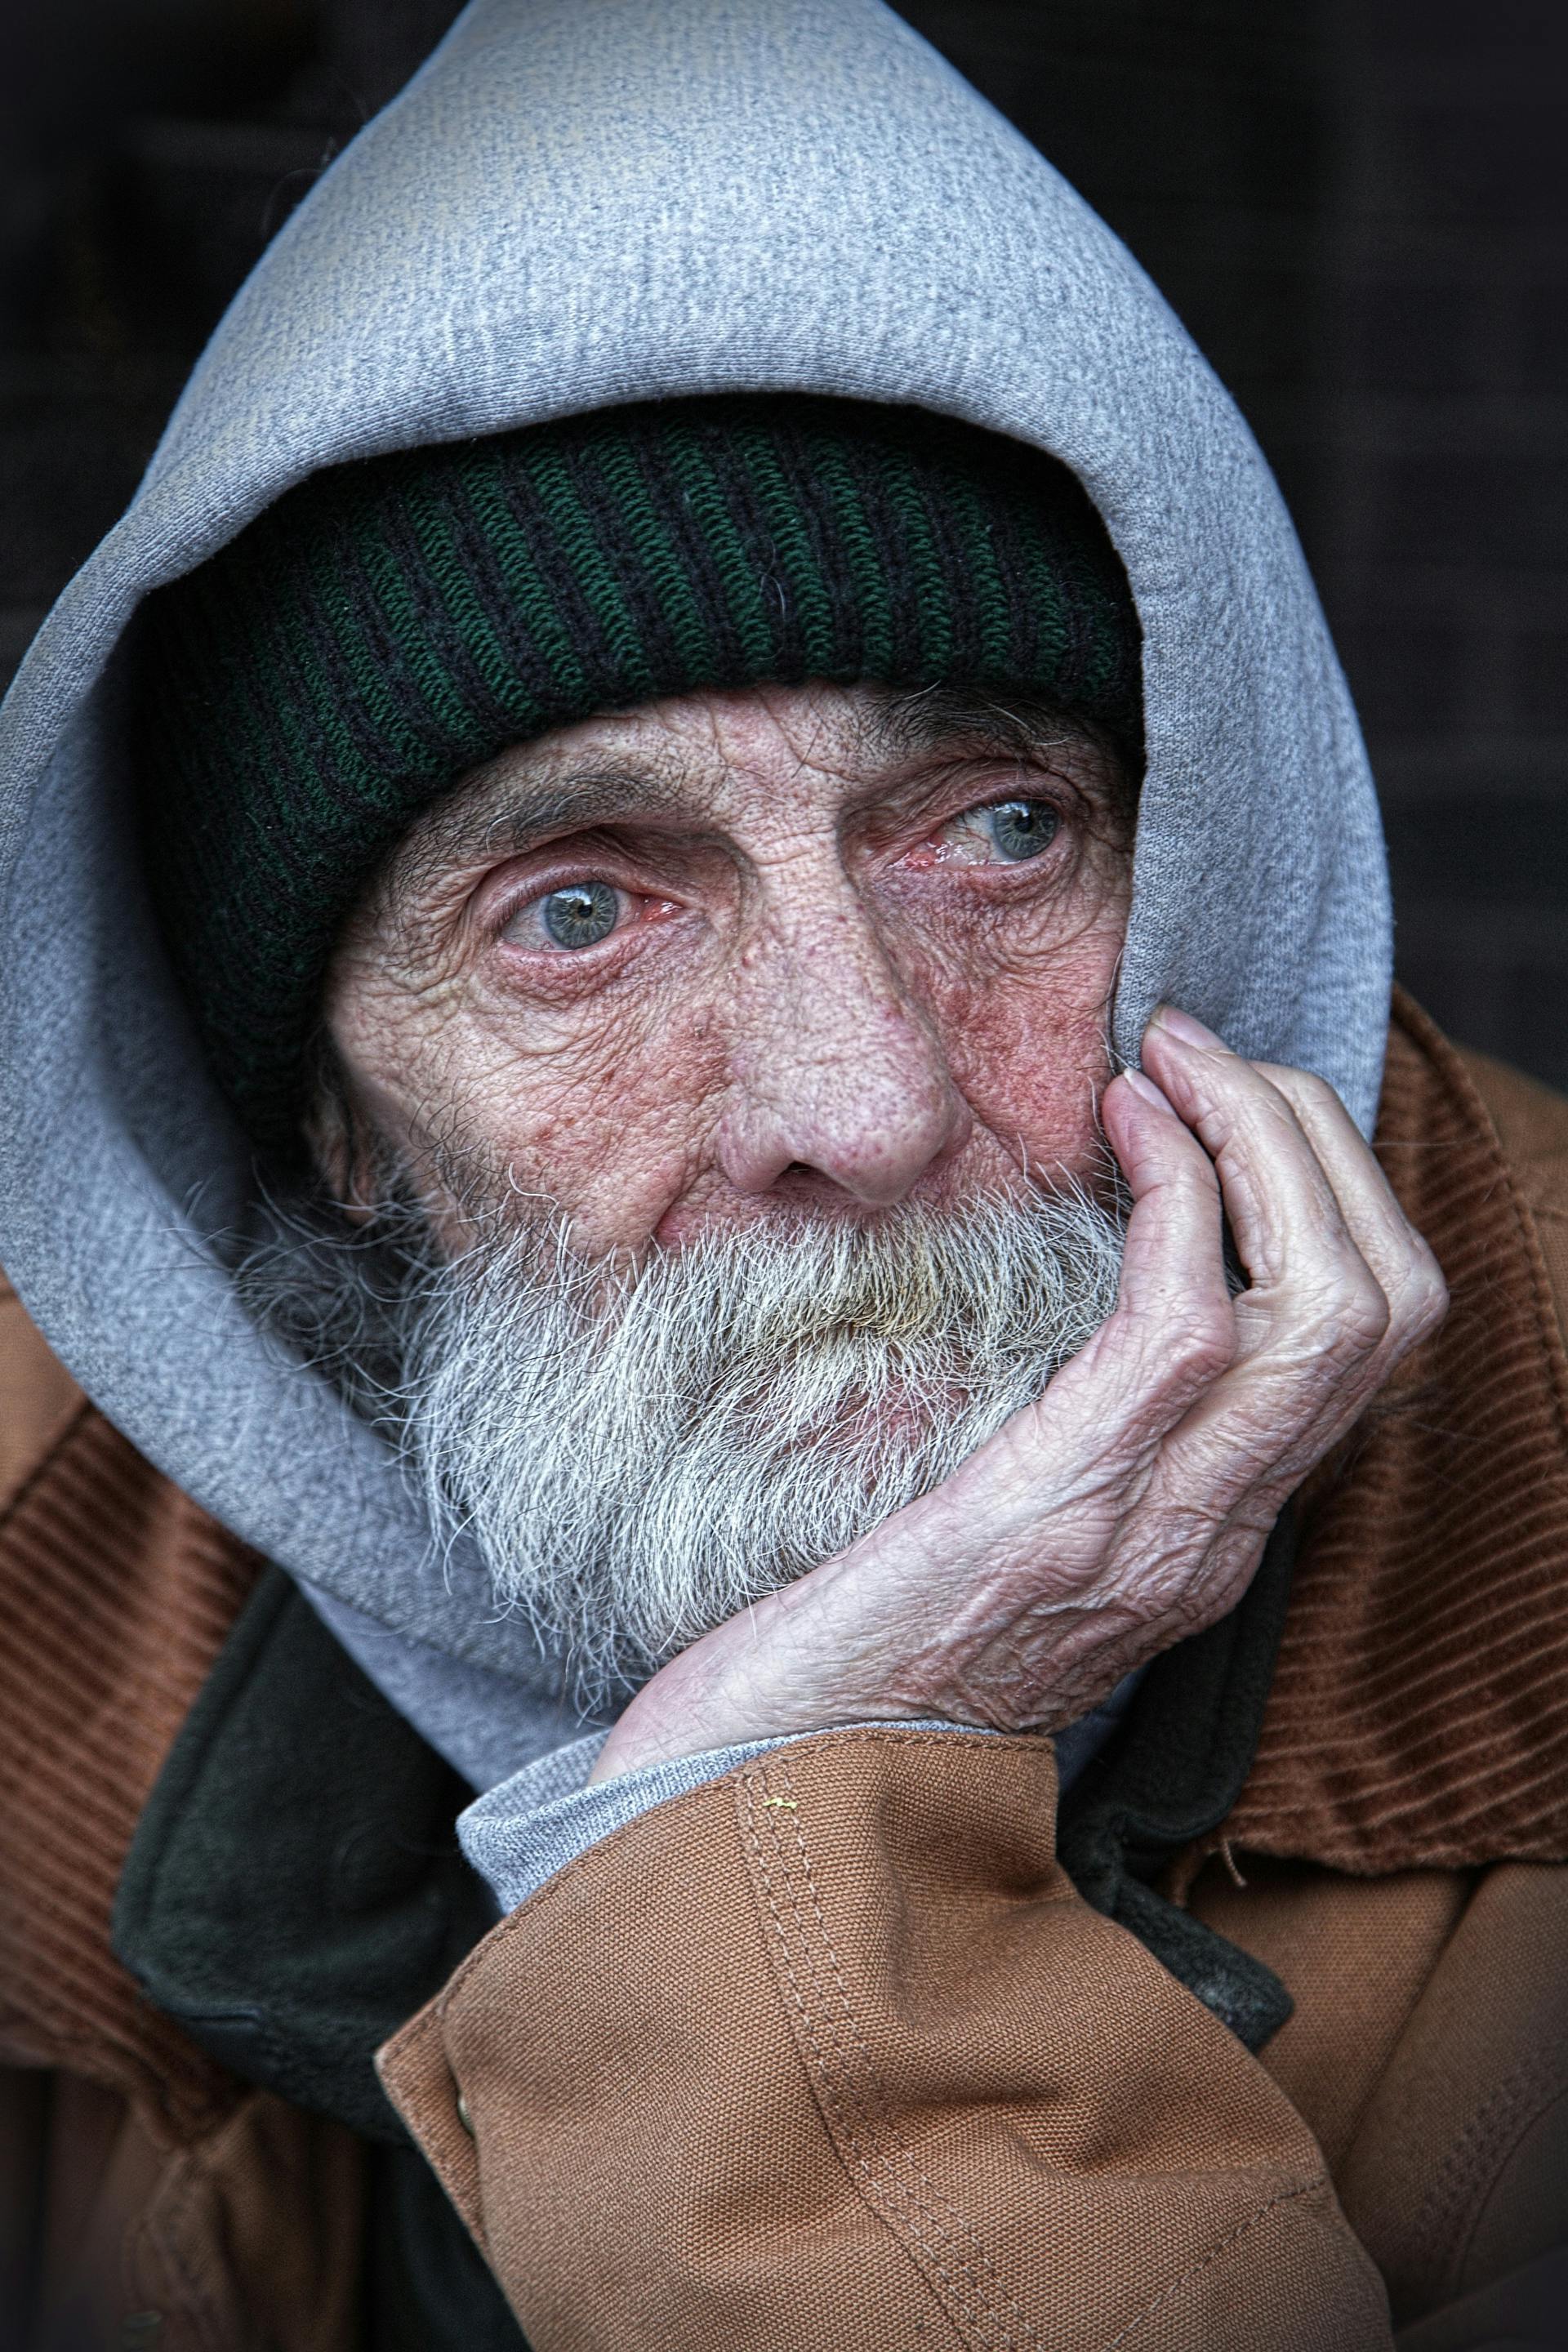 Old man looking forlorn | Source: Pexels